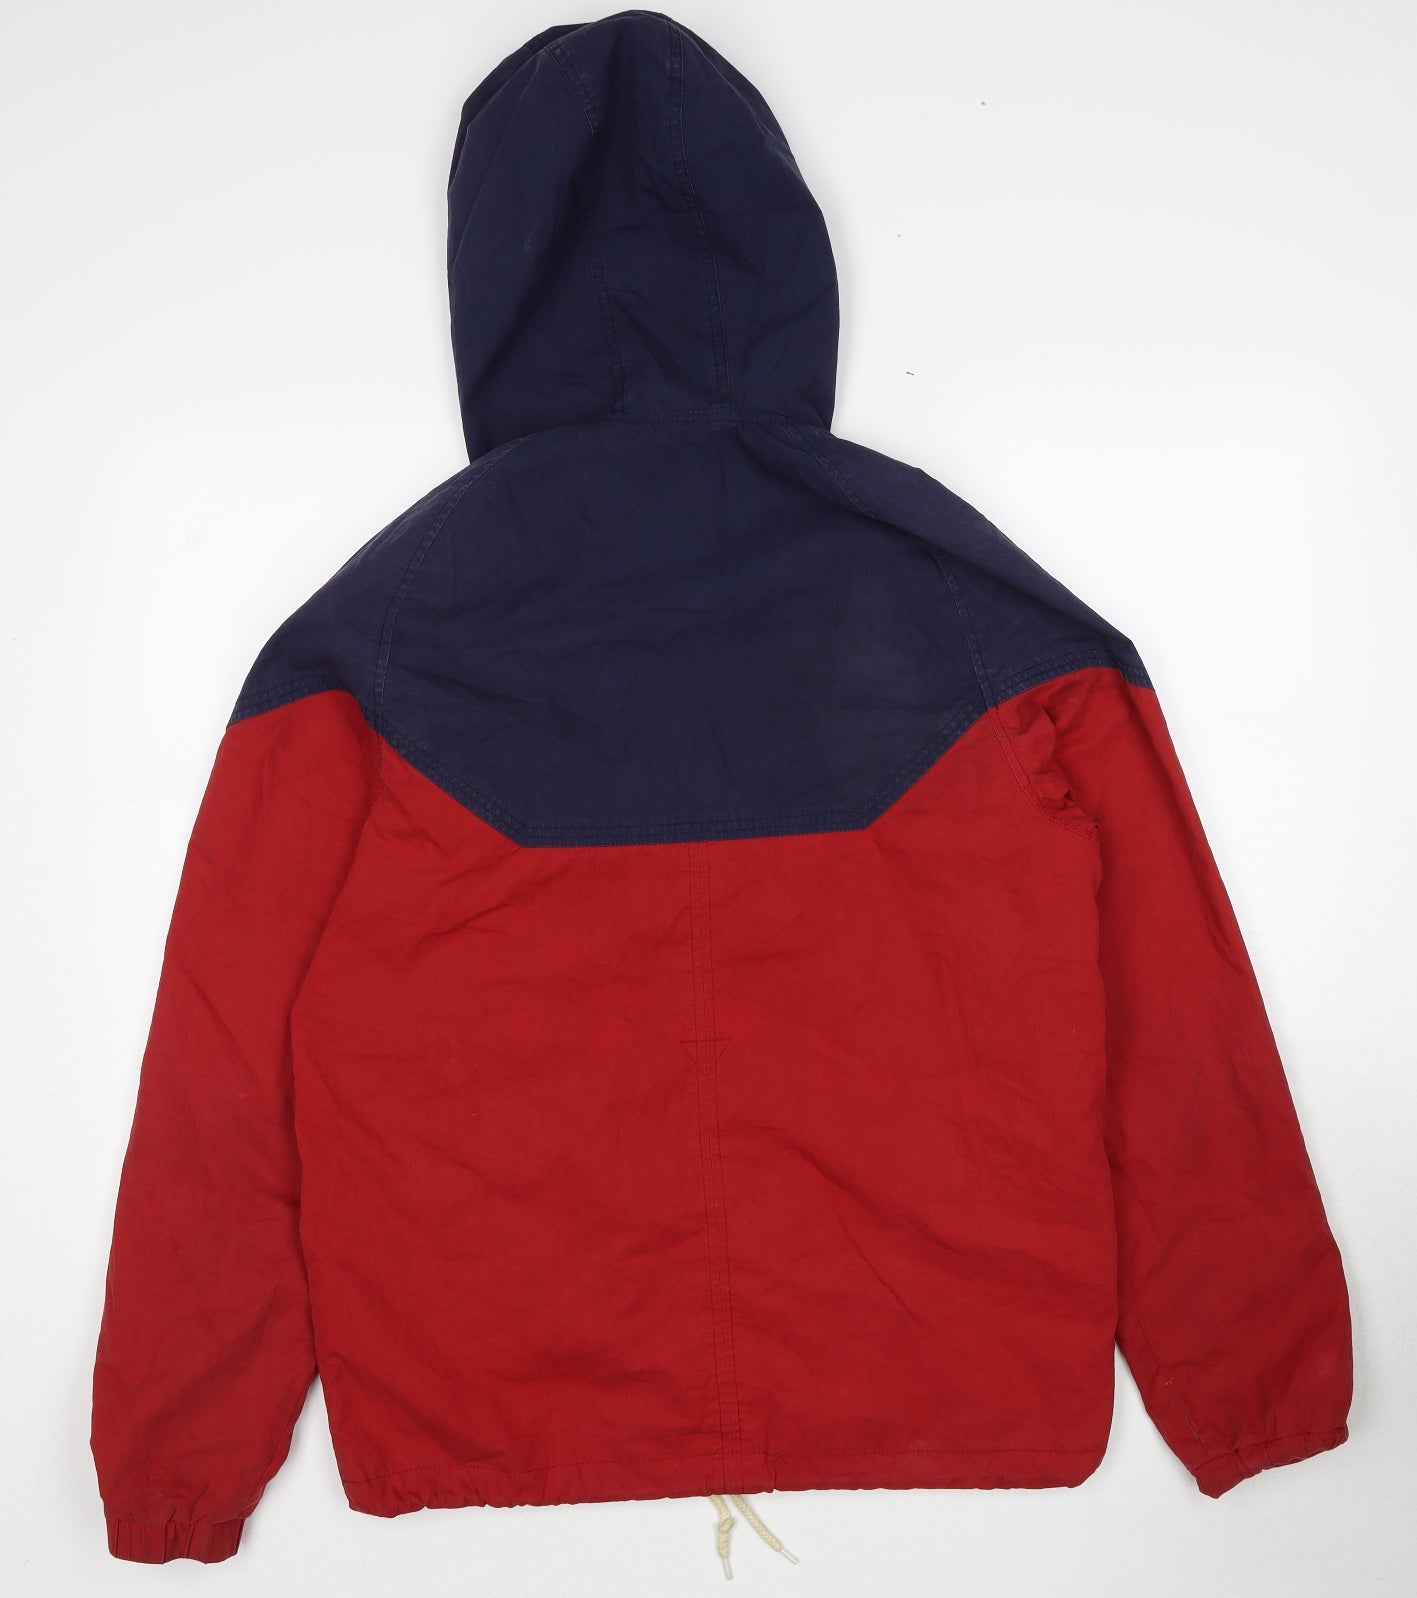 FLY53 Mens Red Windbreaker Jacket Size L Zip - Colourblock